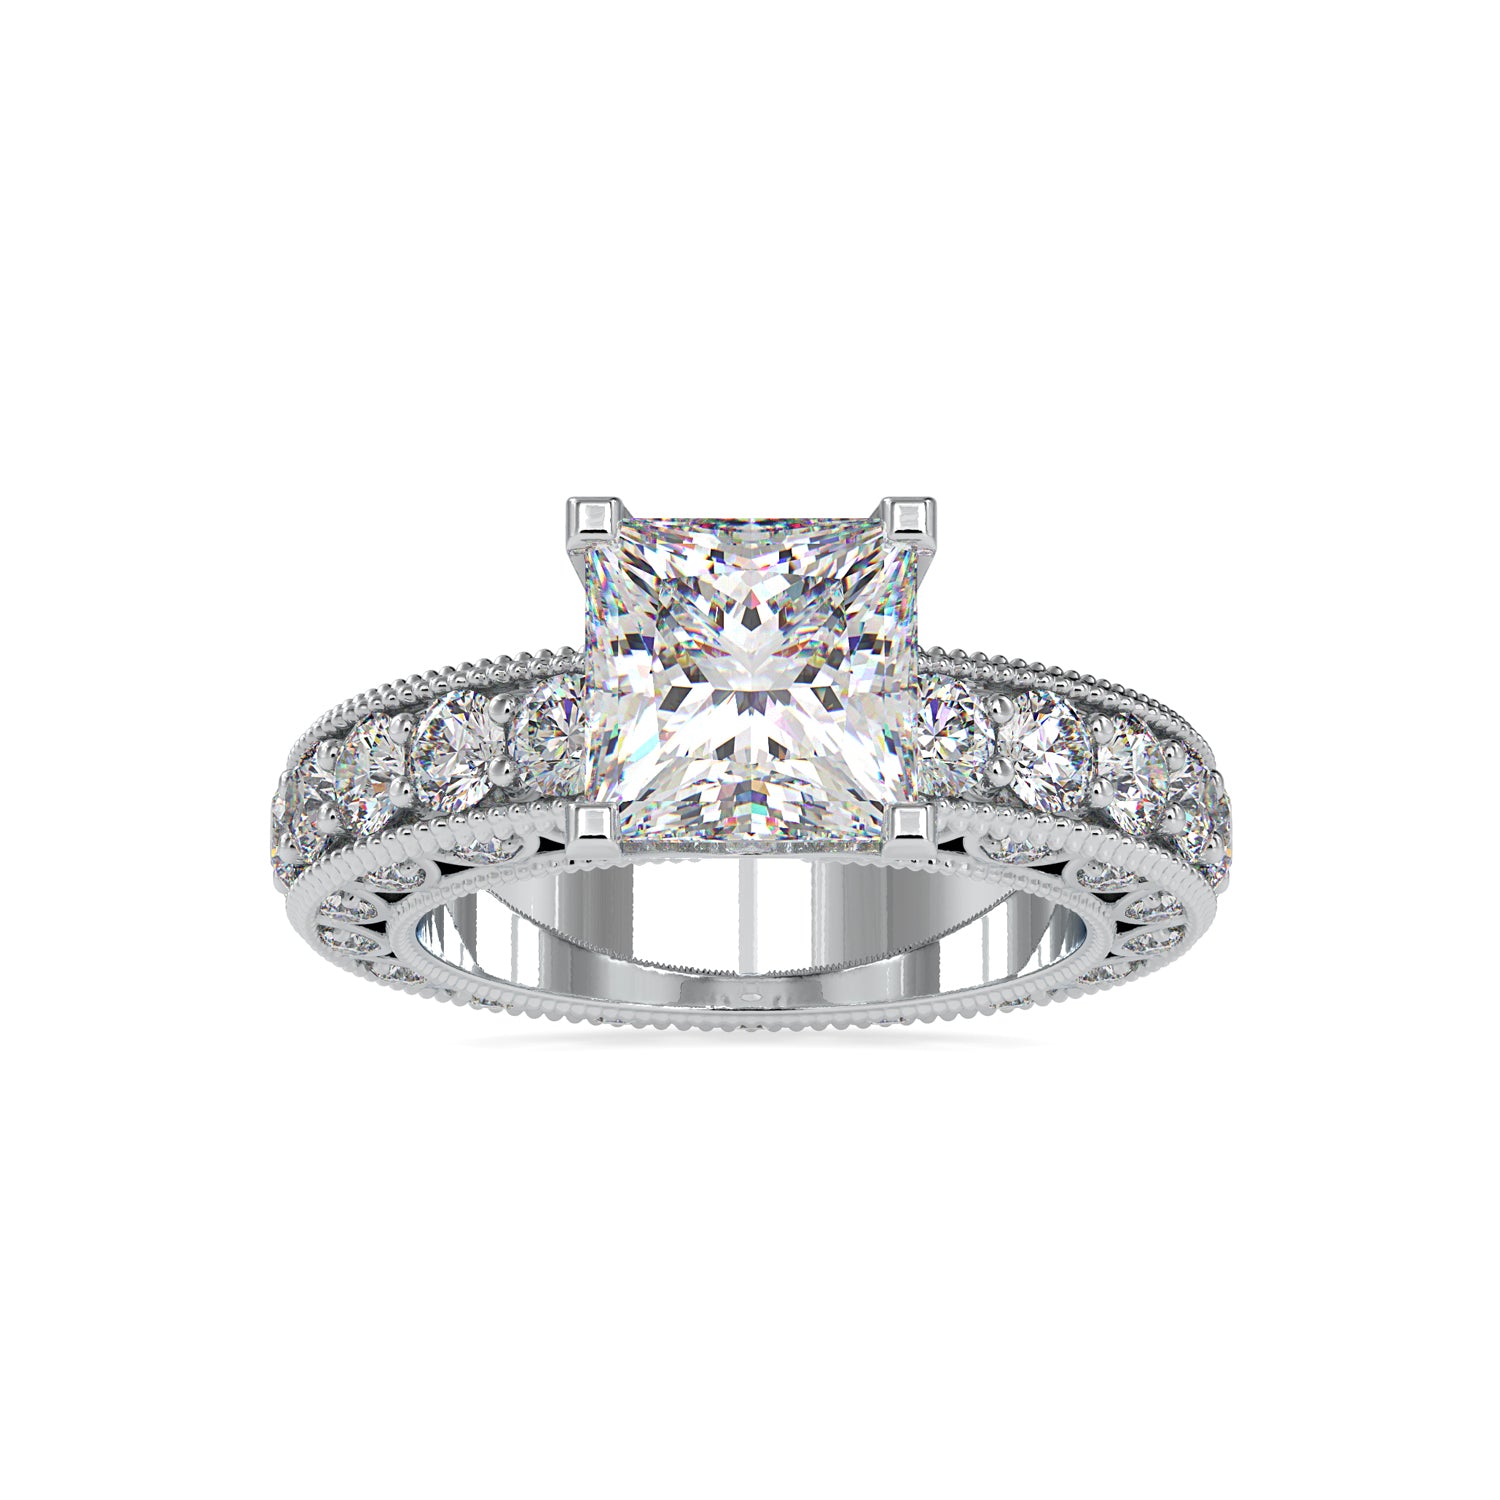 unique moissanite engagement rings - diamondrensu